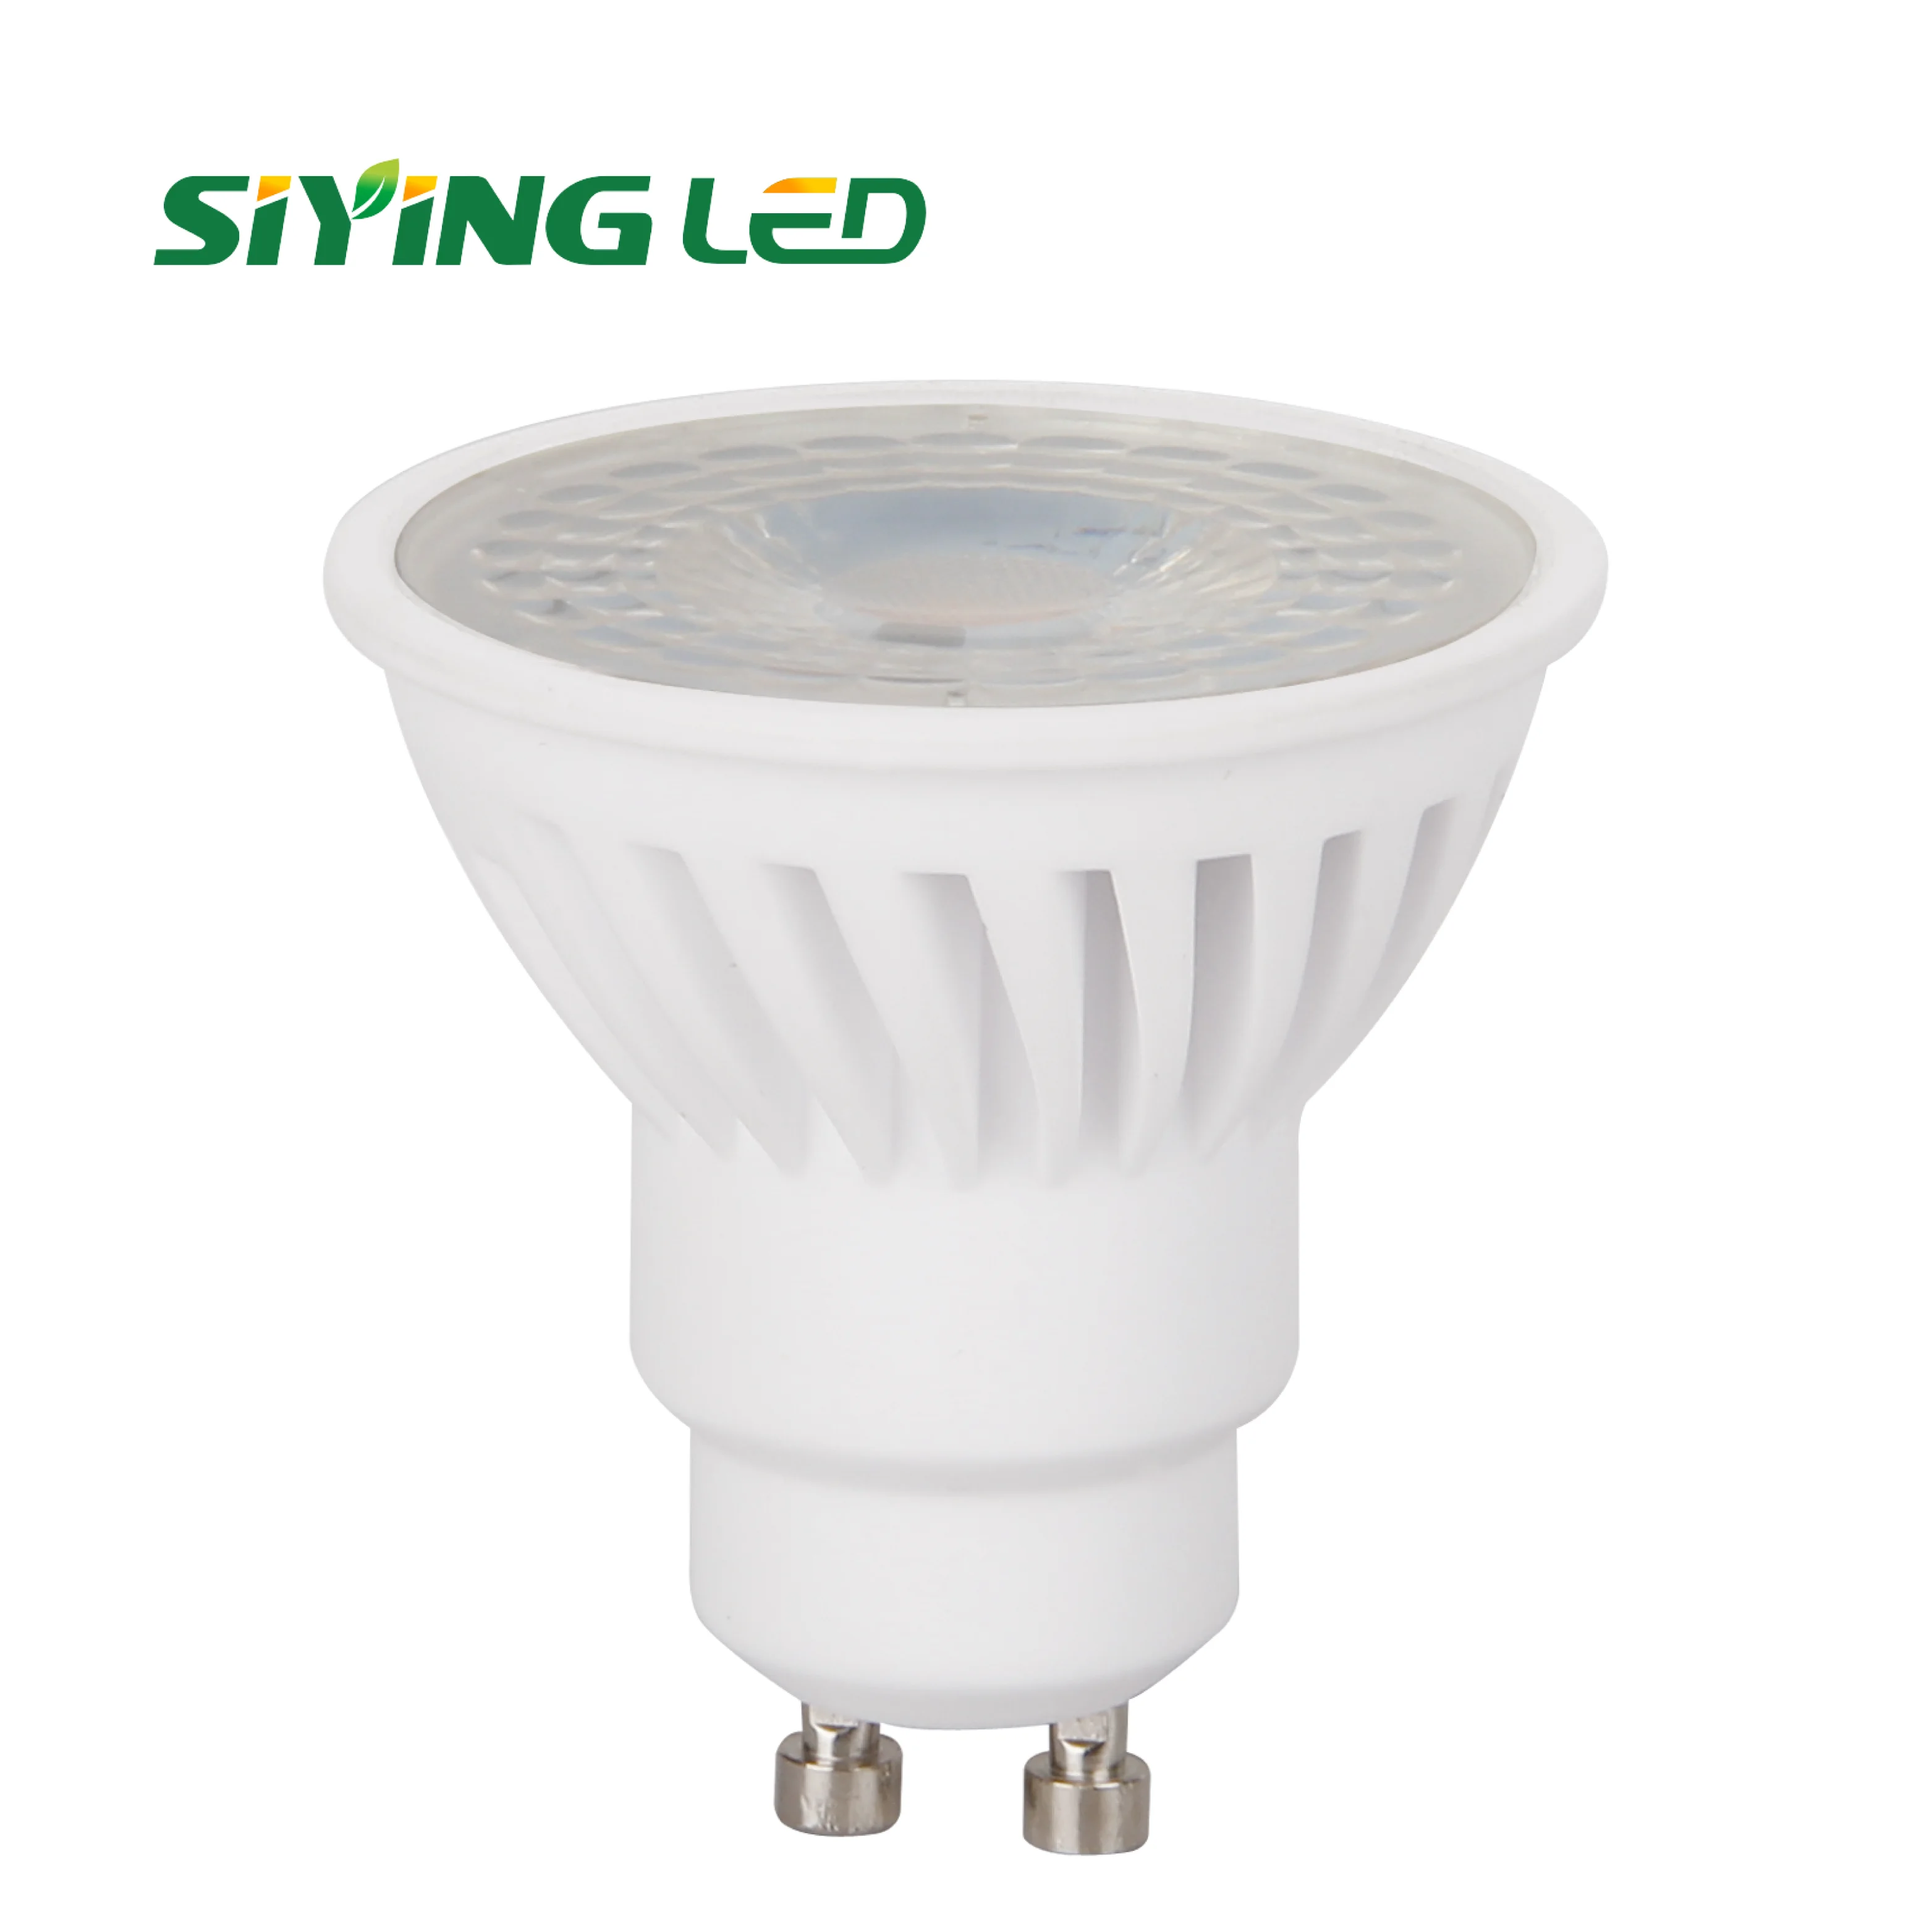 Gu10 9w/9.5w 900lm/1050lm Ceramic High Spotlight Led Bulbs - Buy Gu10 Led Bulb,Led Spotlight,Gu10 9w Ceramic Bulb Product on Alibaba.com